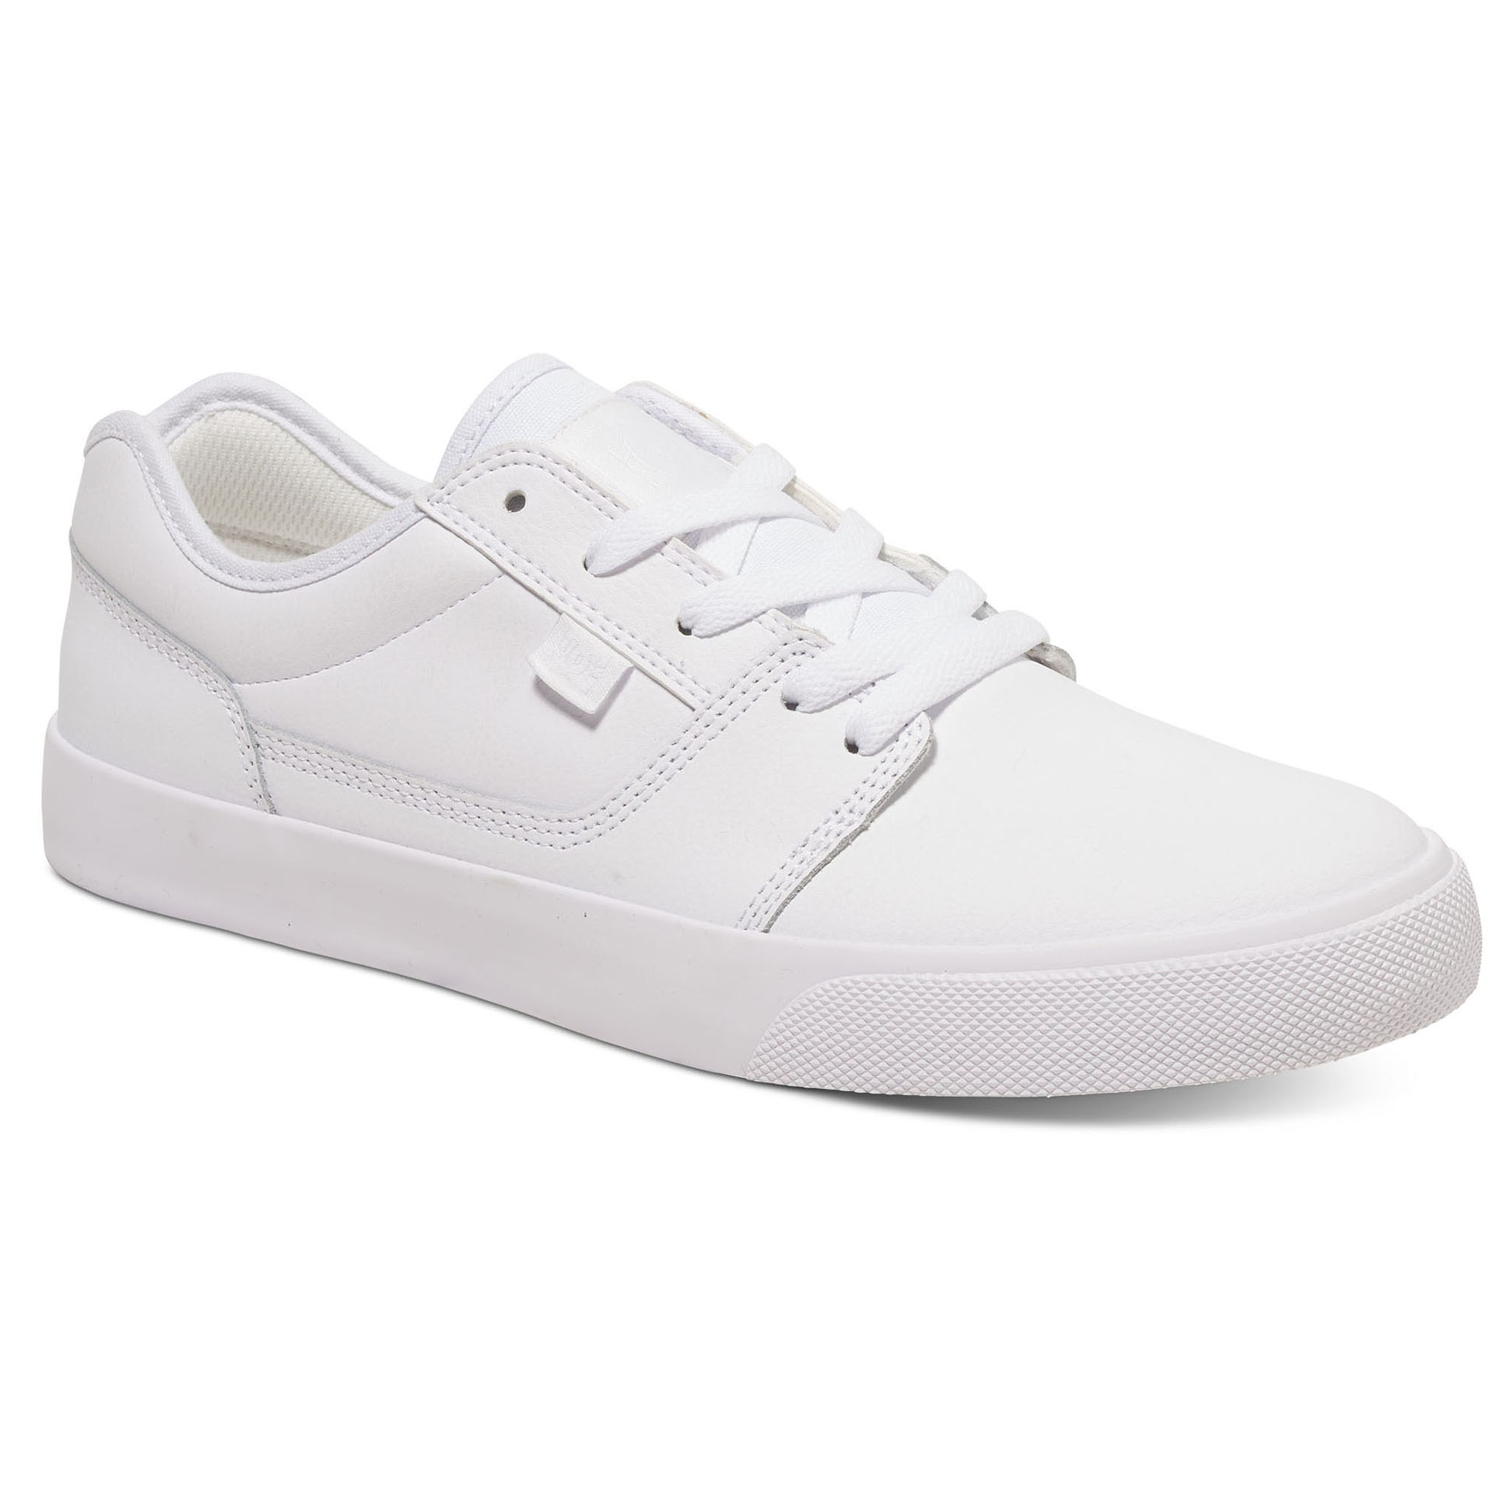 DC Shoes Tonik White/White/White